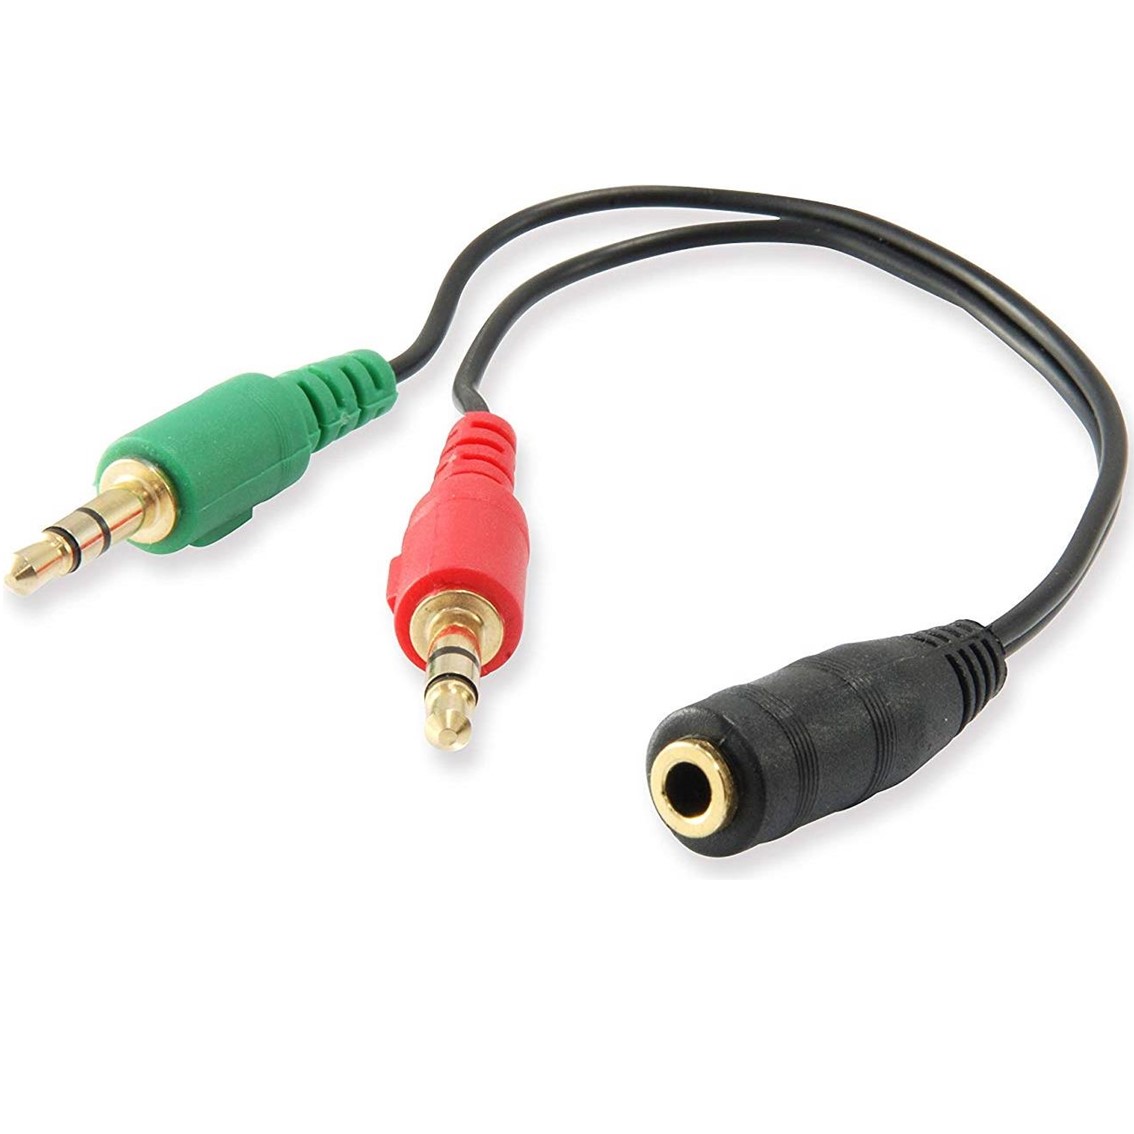 Cable adaptador de audio ewent jack 3.5mm hembra a jack 3.5mm macho x2 negro 0.15m